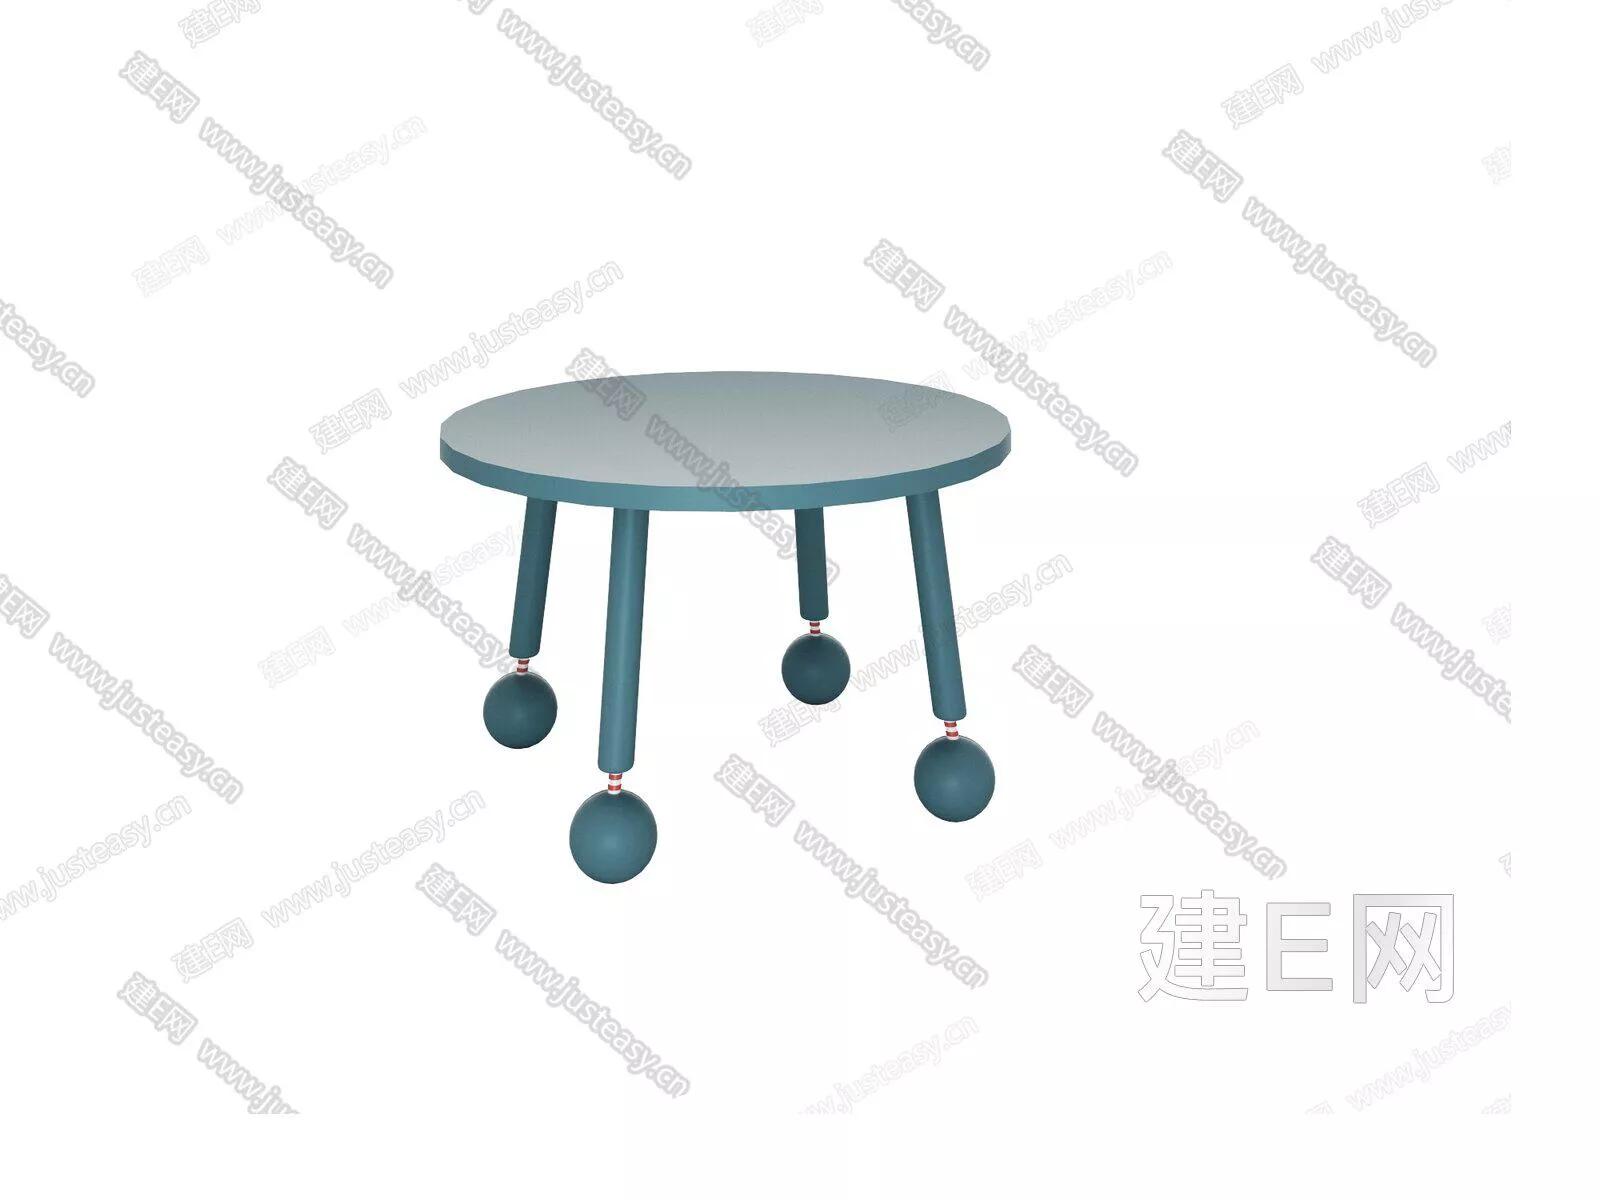 NORDIC SIDE TABLE - SKETCHUP 3D MODEL - ENSCAPE - 104941692